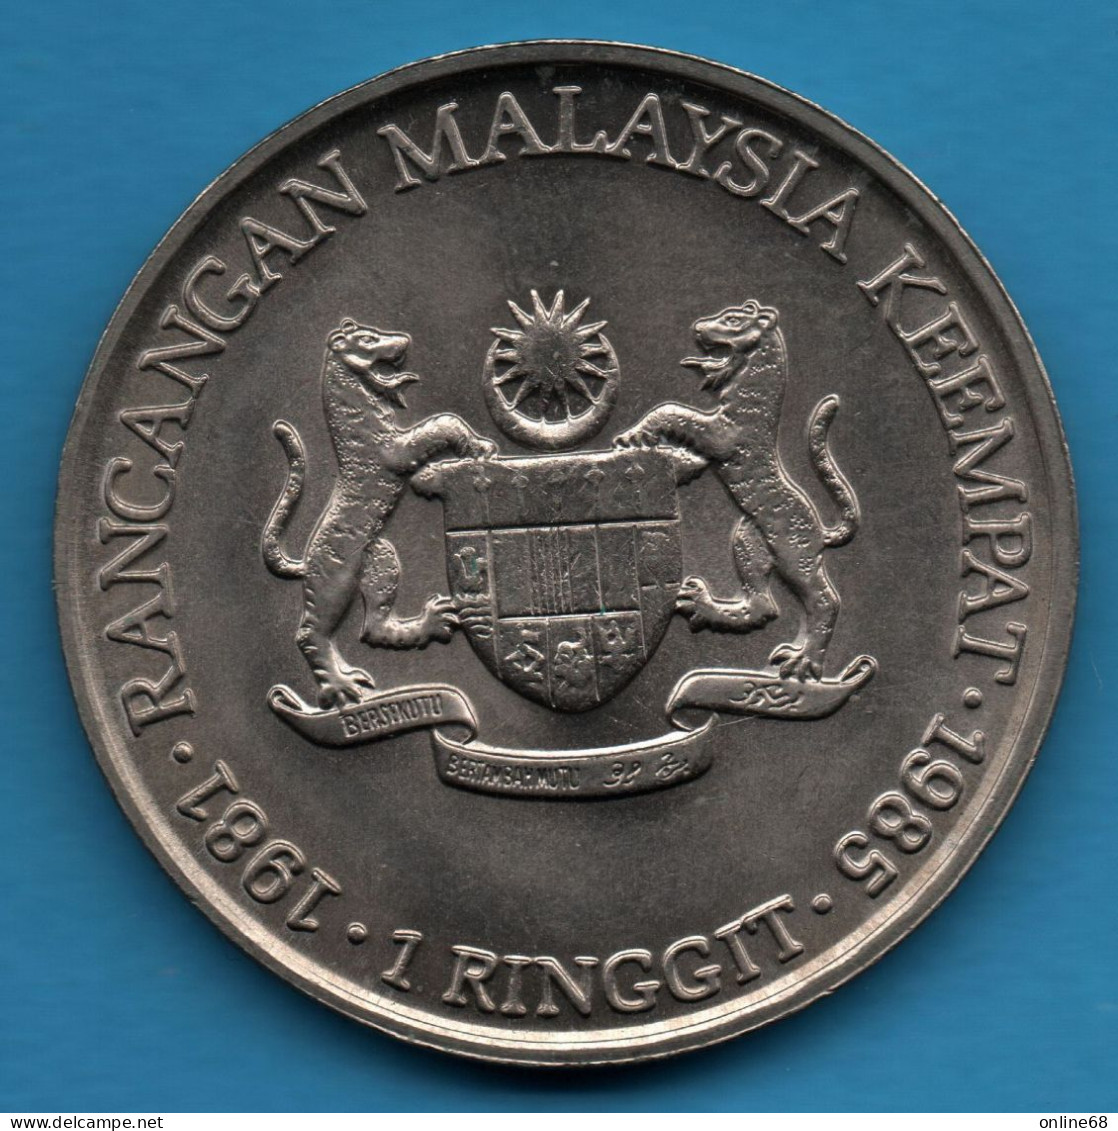 MALAYSIA 1 RINGGIT 1981 - 1985 KM# 29 4th Malaysia Plan TUN HUSSEIN ONN - Malaysie